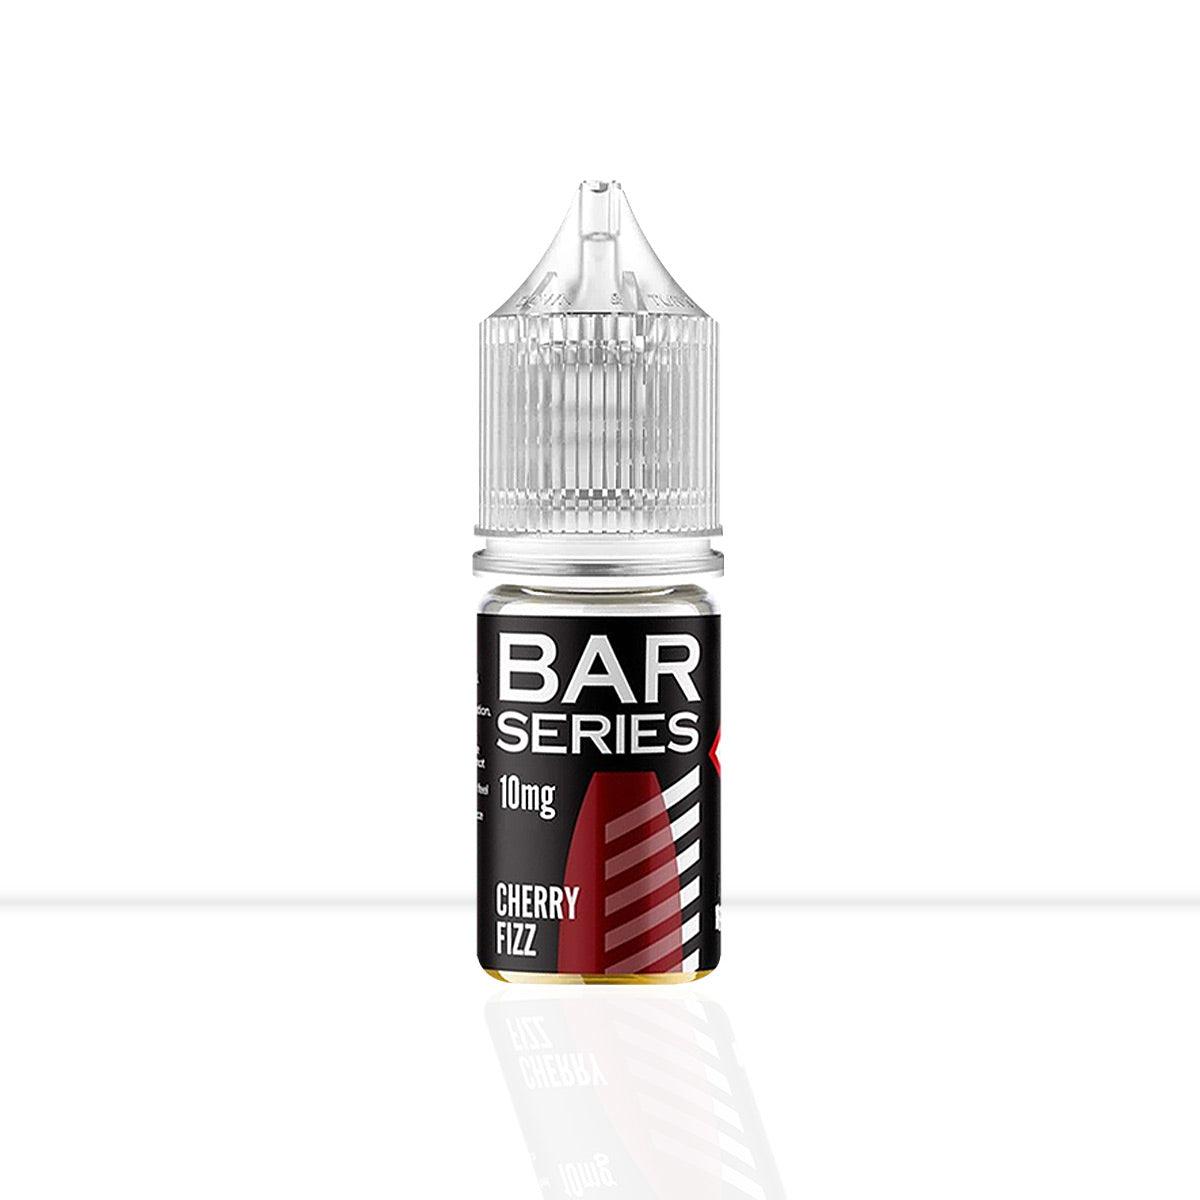 Cherry Fizz Nic Salt E-Liquid Bar Series - Cherry Fizz Nic Salt E-Liquid Bar Series - E Liquid